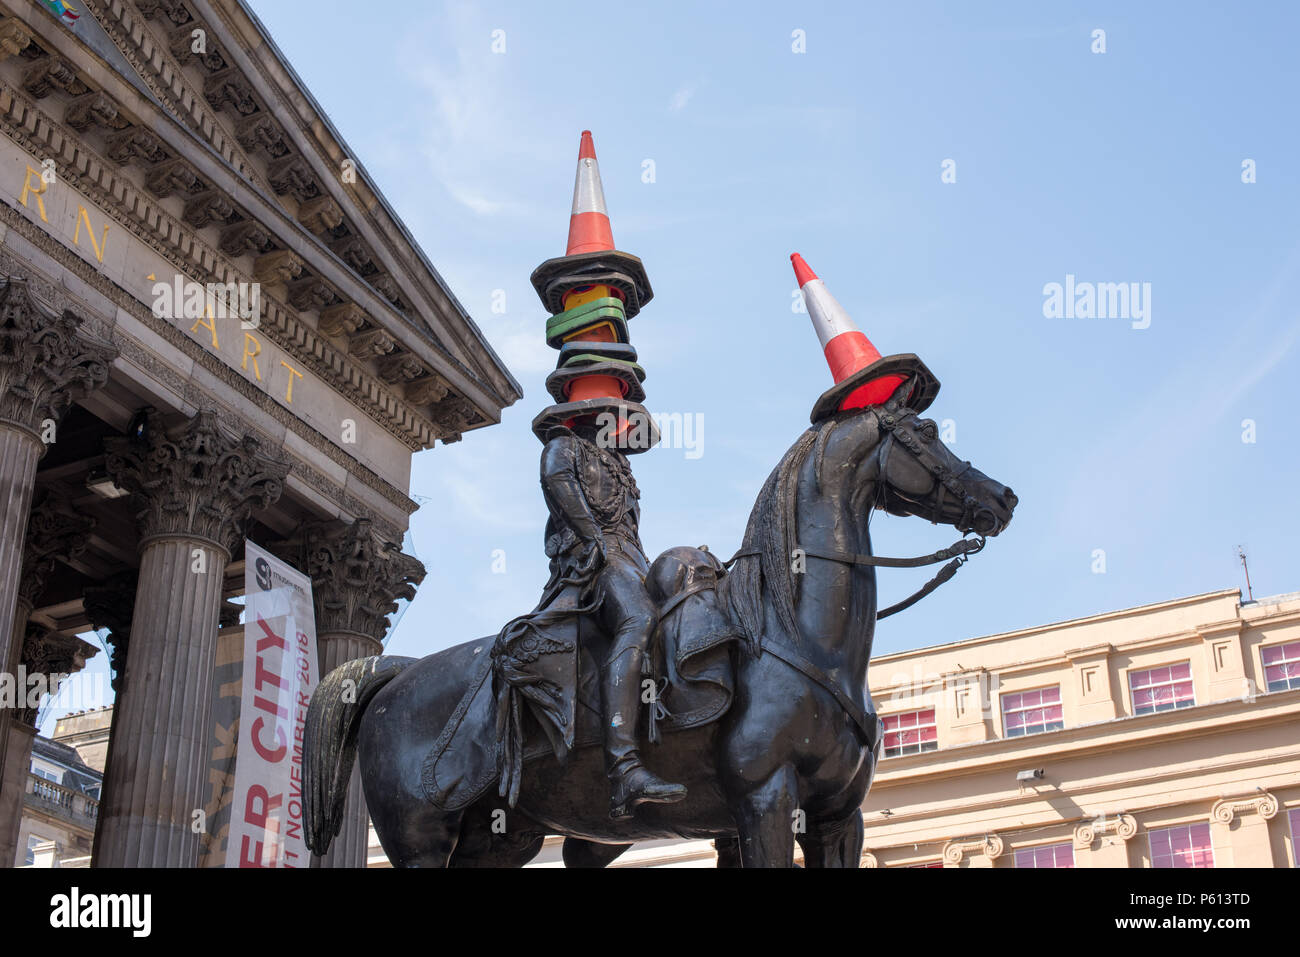 Glasgow, Royaume-Uni. 27 Jun, 2018. Météo France : attraction touristique insolite la statue du duc de Wellington est l'utilisation des cônes sur la tête dans le soleil d'été Crédit : Tony Clerkson/Alamy Live News Banque D'Images